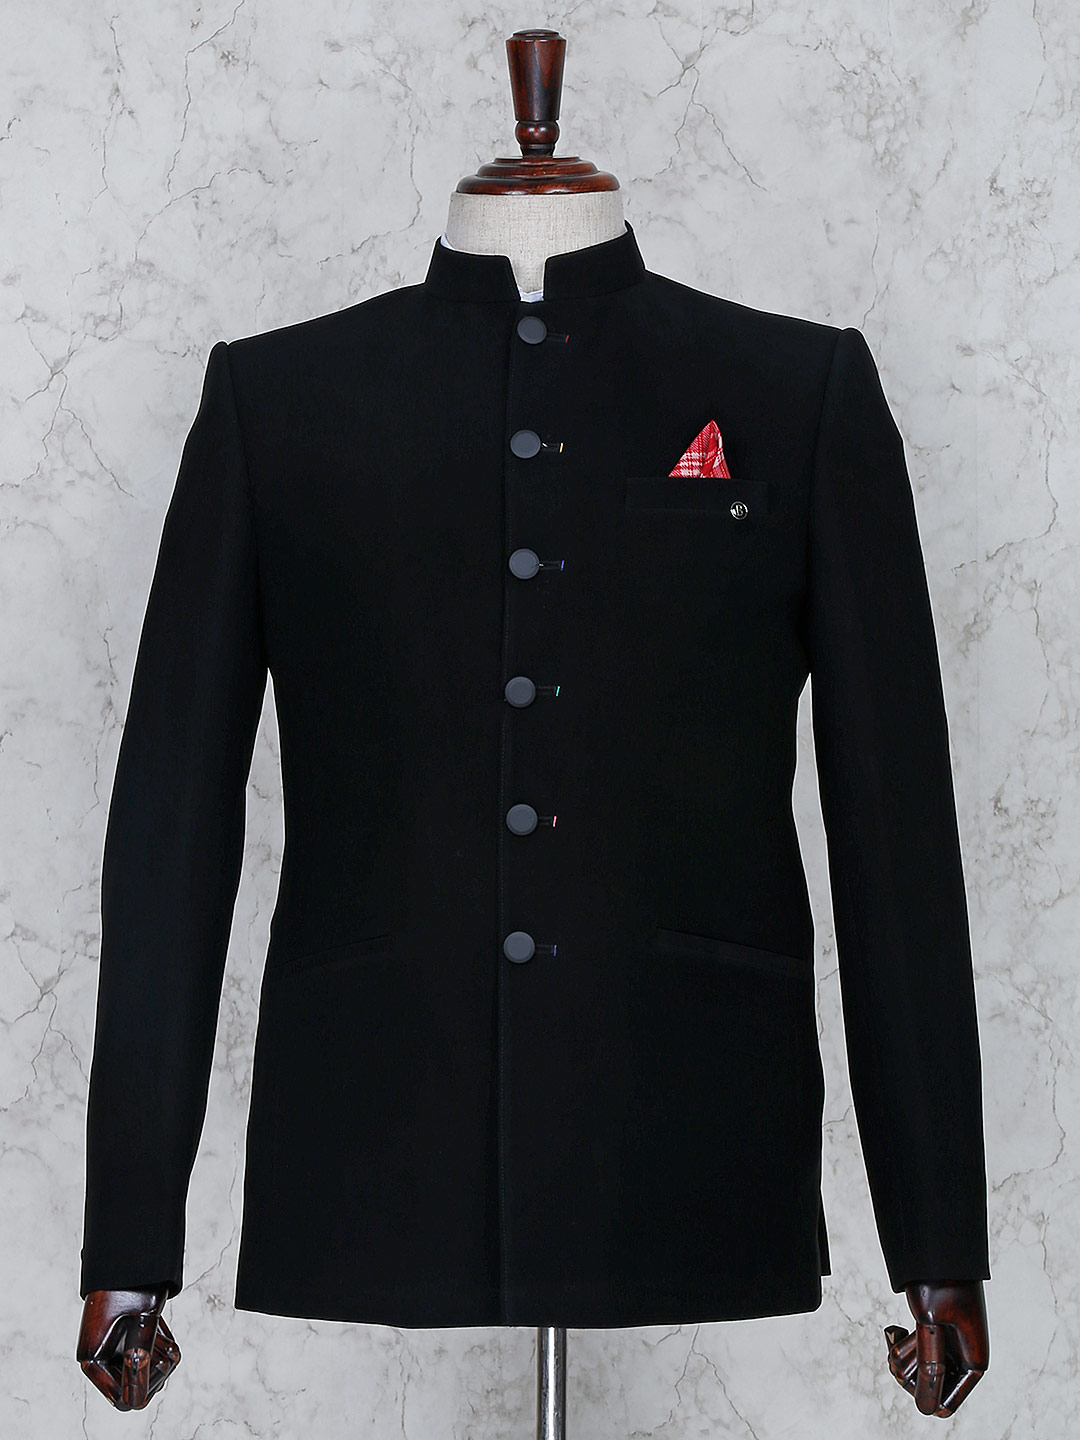 Mens Coat Suits 2019 Buy Online Mens Tuxedo Coat Suit